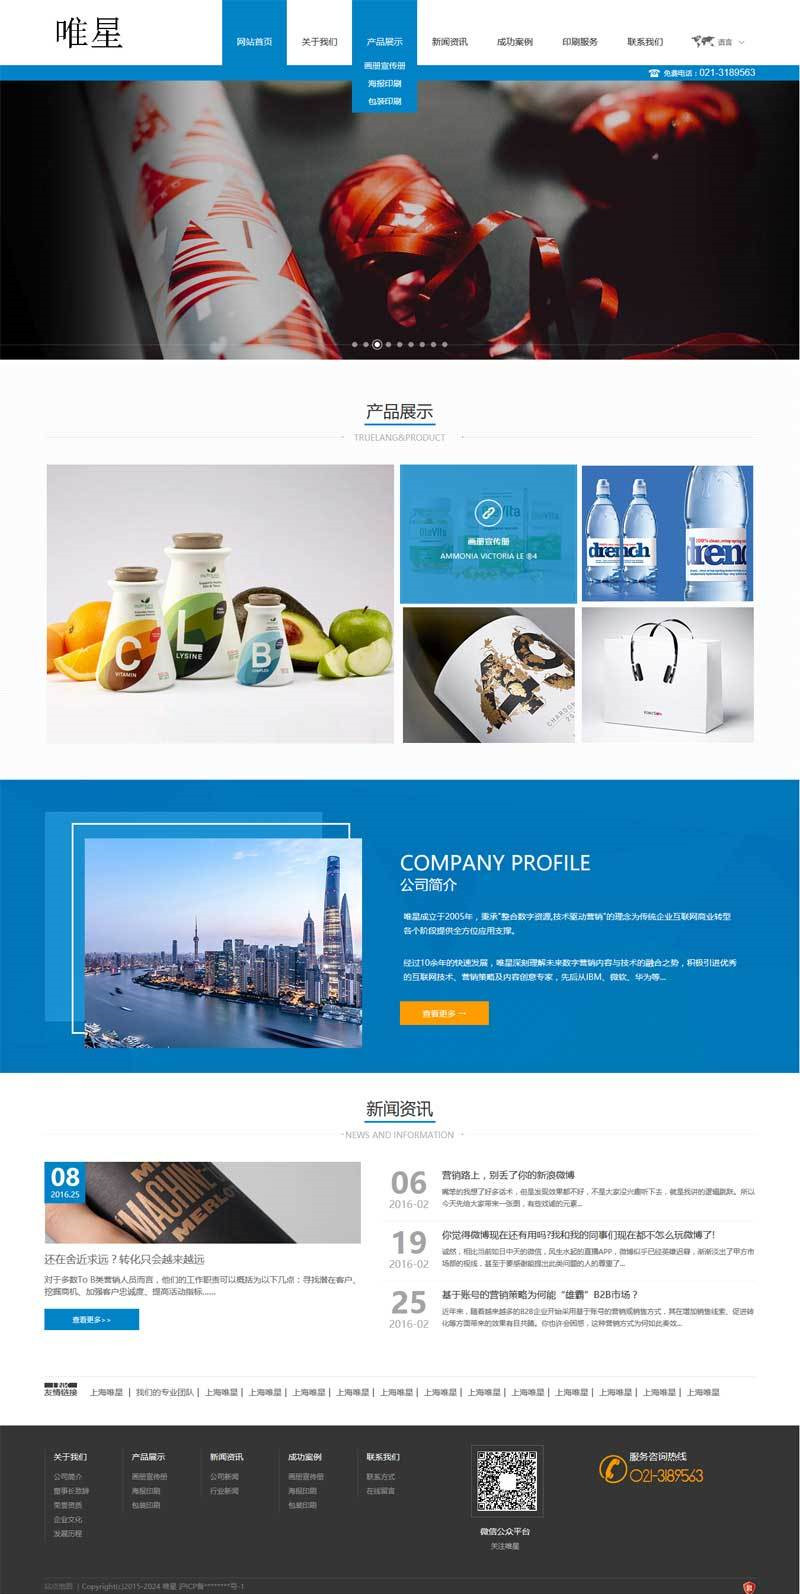 印刷包装企业网站蓝色大气风格的模板下载